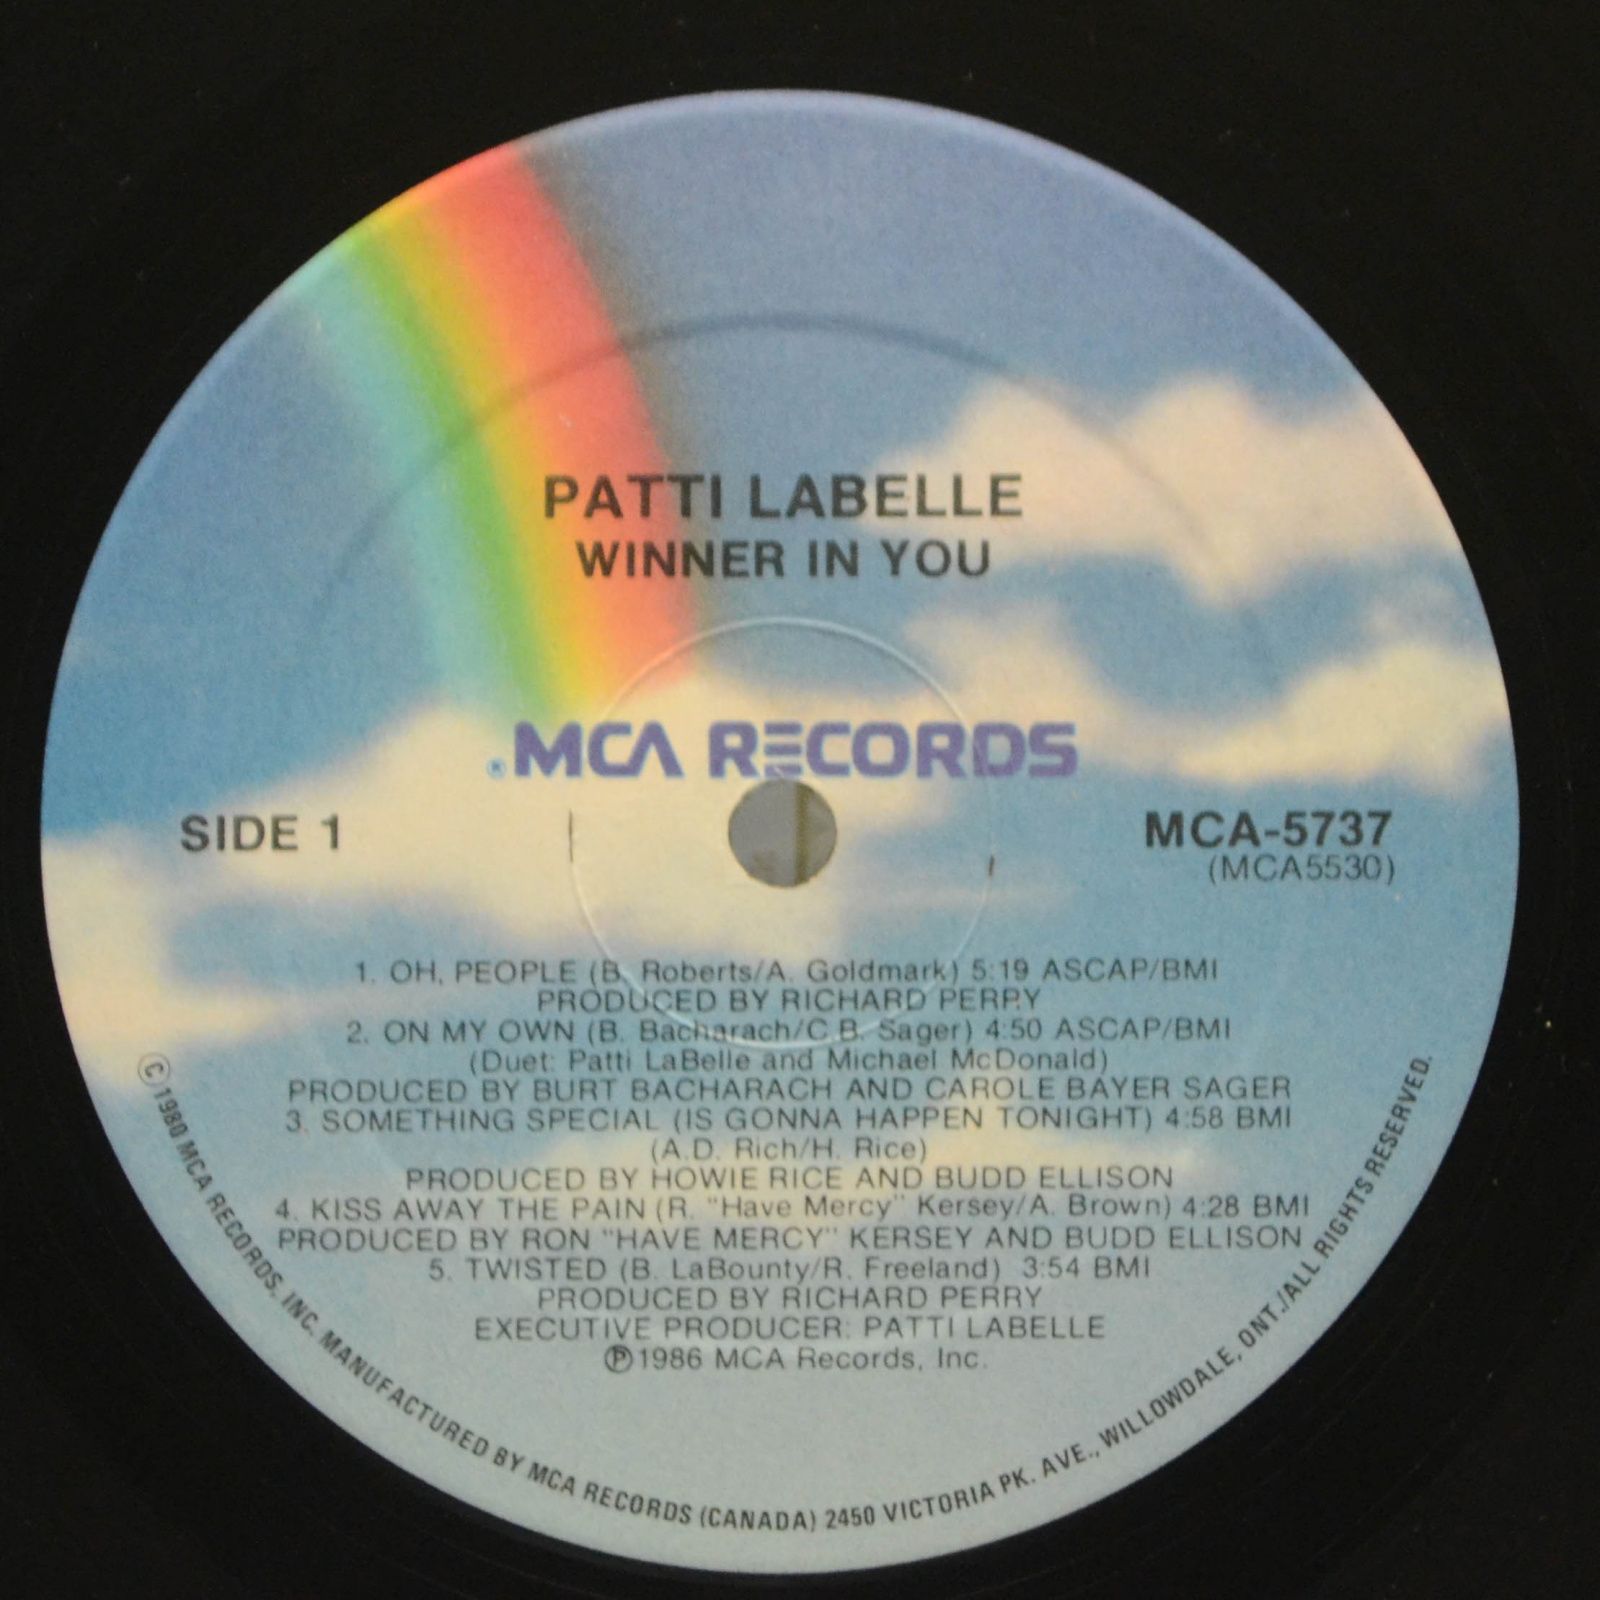 Patti LaBelle — Winner In You, 1986